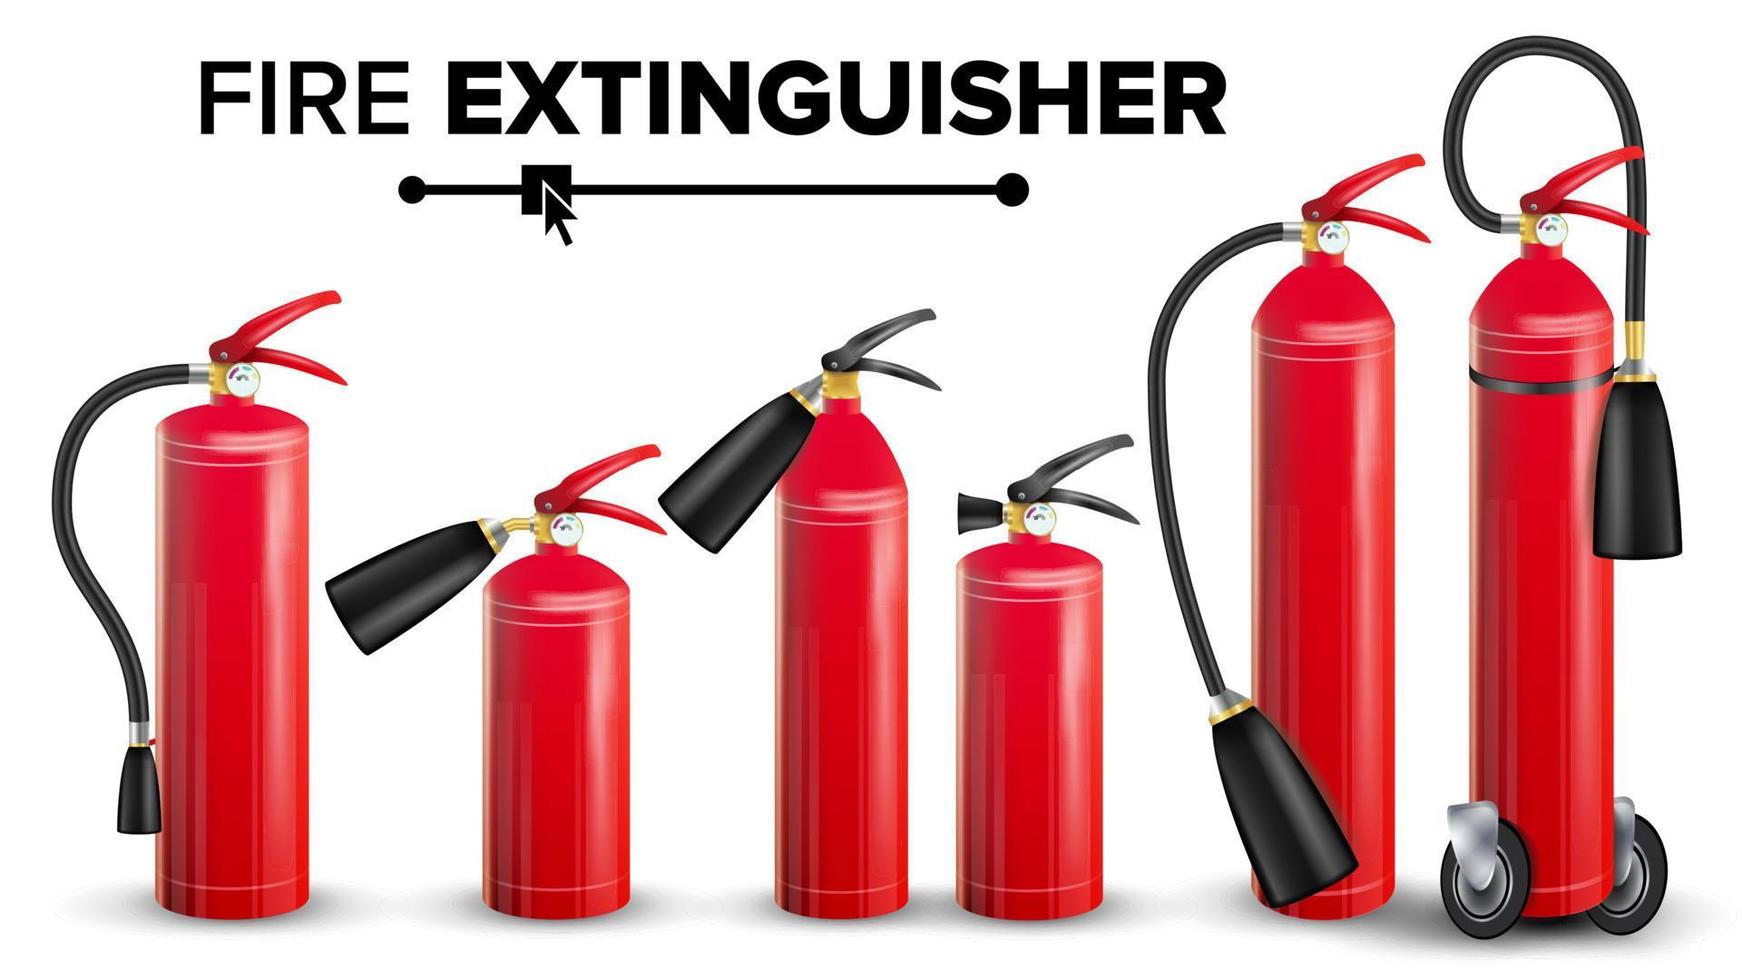 vetor de conjunto de extintor de incêndio. tipos diferentes. brilho de metal ilustração isolada de extintor vermelho realista 3d